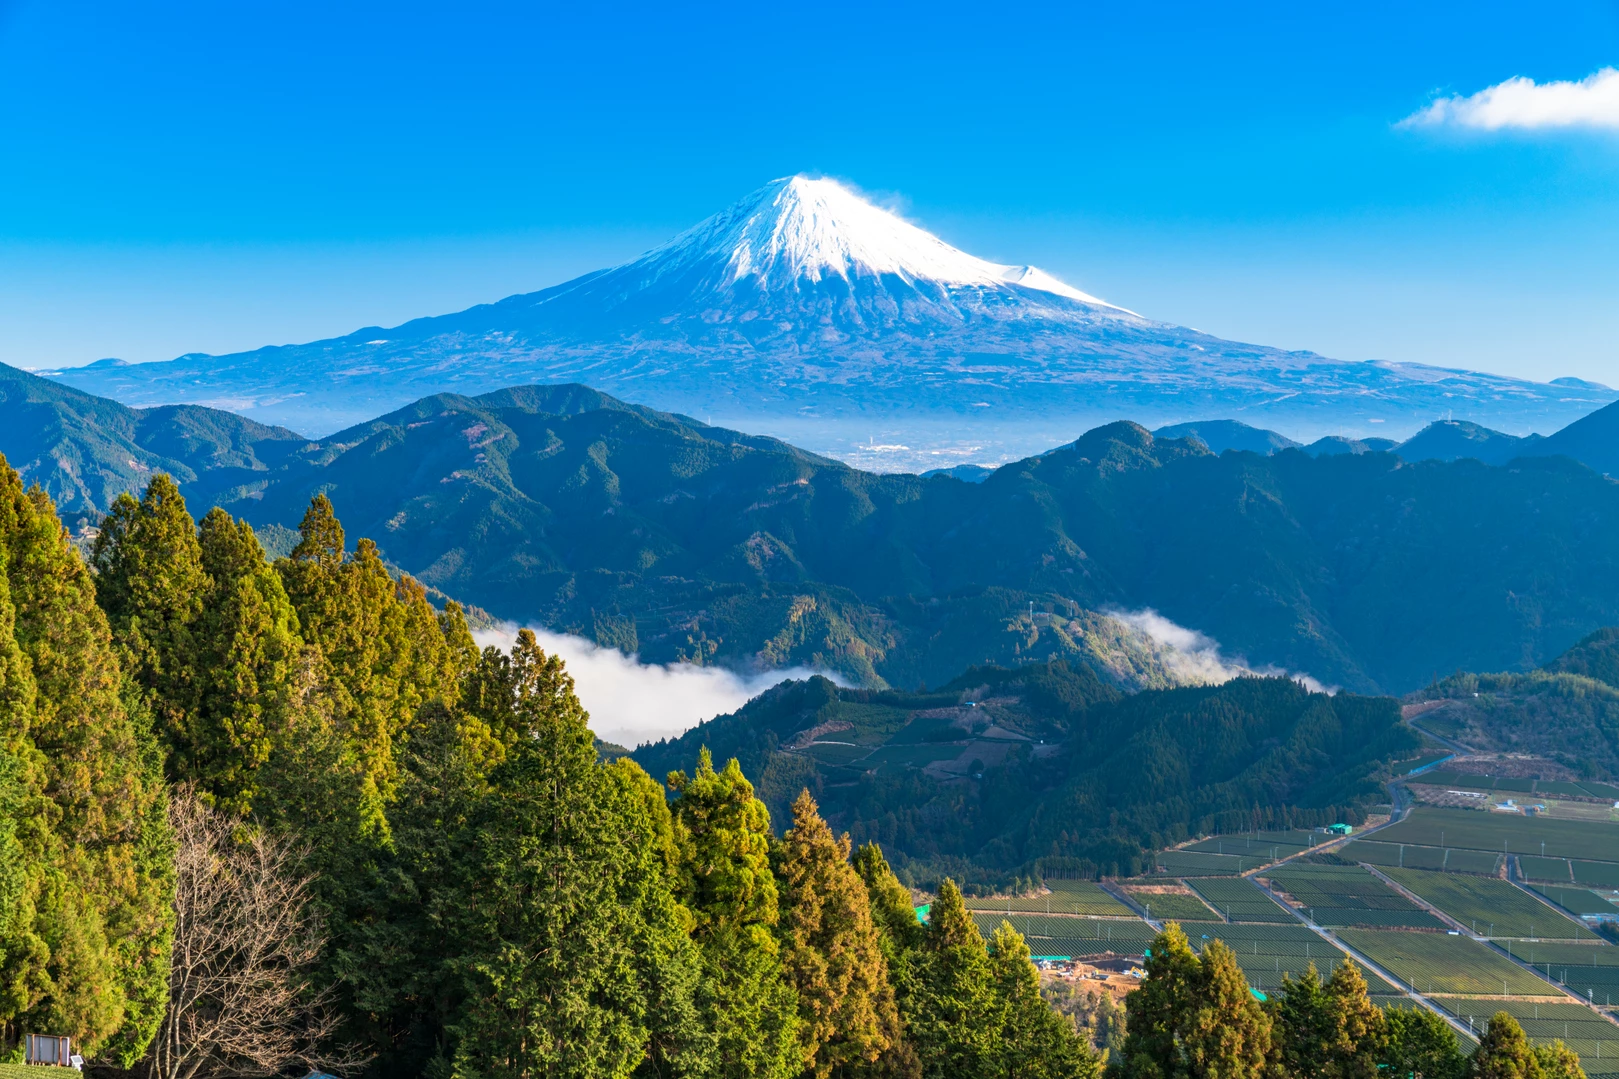 富士山 山梨 静岡 の山総合情報ページ 登山ルート 写真 天気情報など Yamap ヤマップ